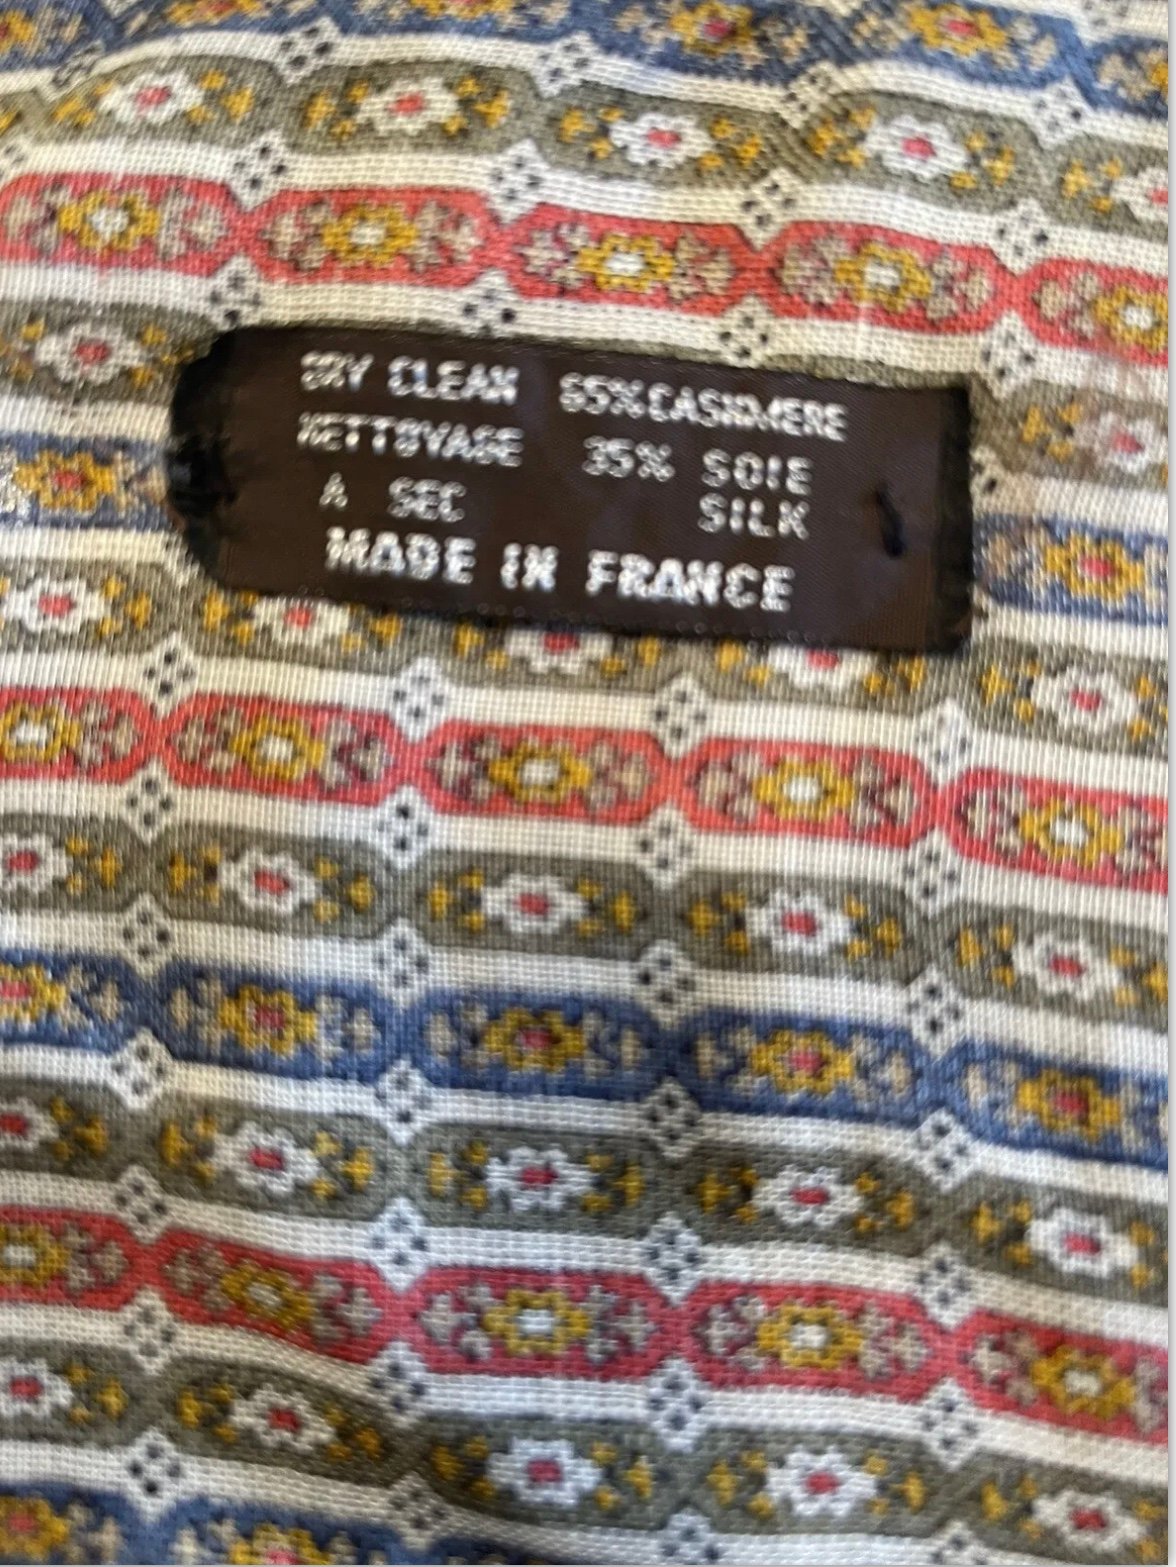 Personality Vintage Daniel La Foret Paris, Brown/Orange/ Blue Cashmere Silk France NjaRojkla hot sale